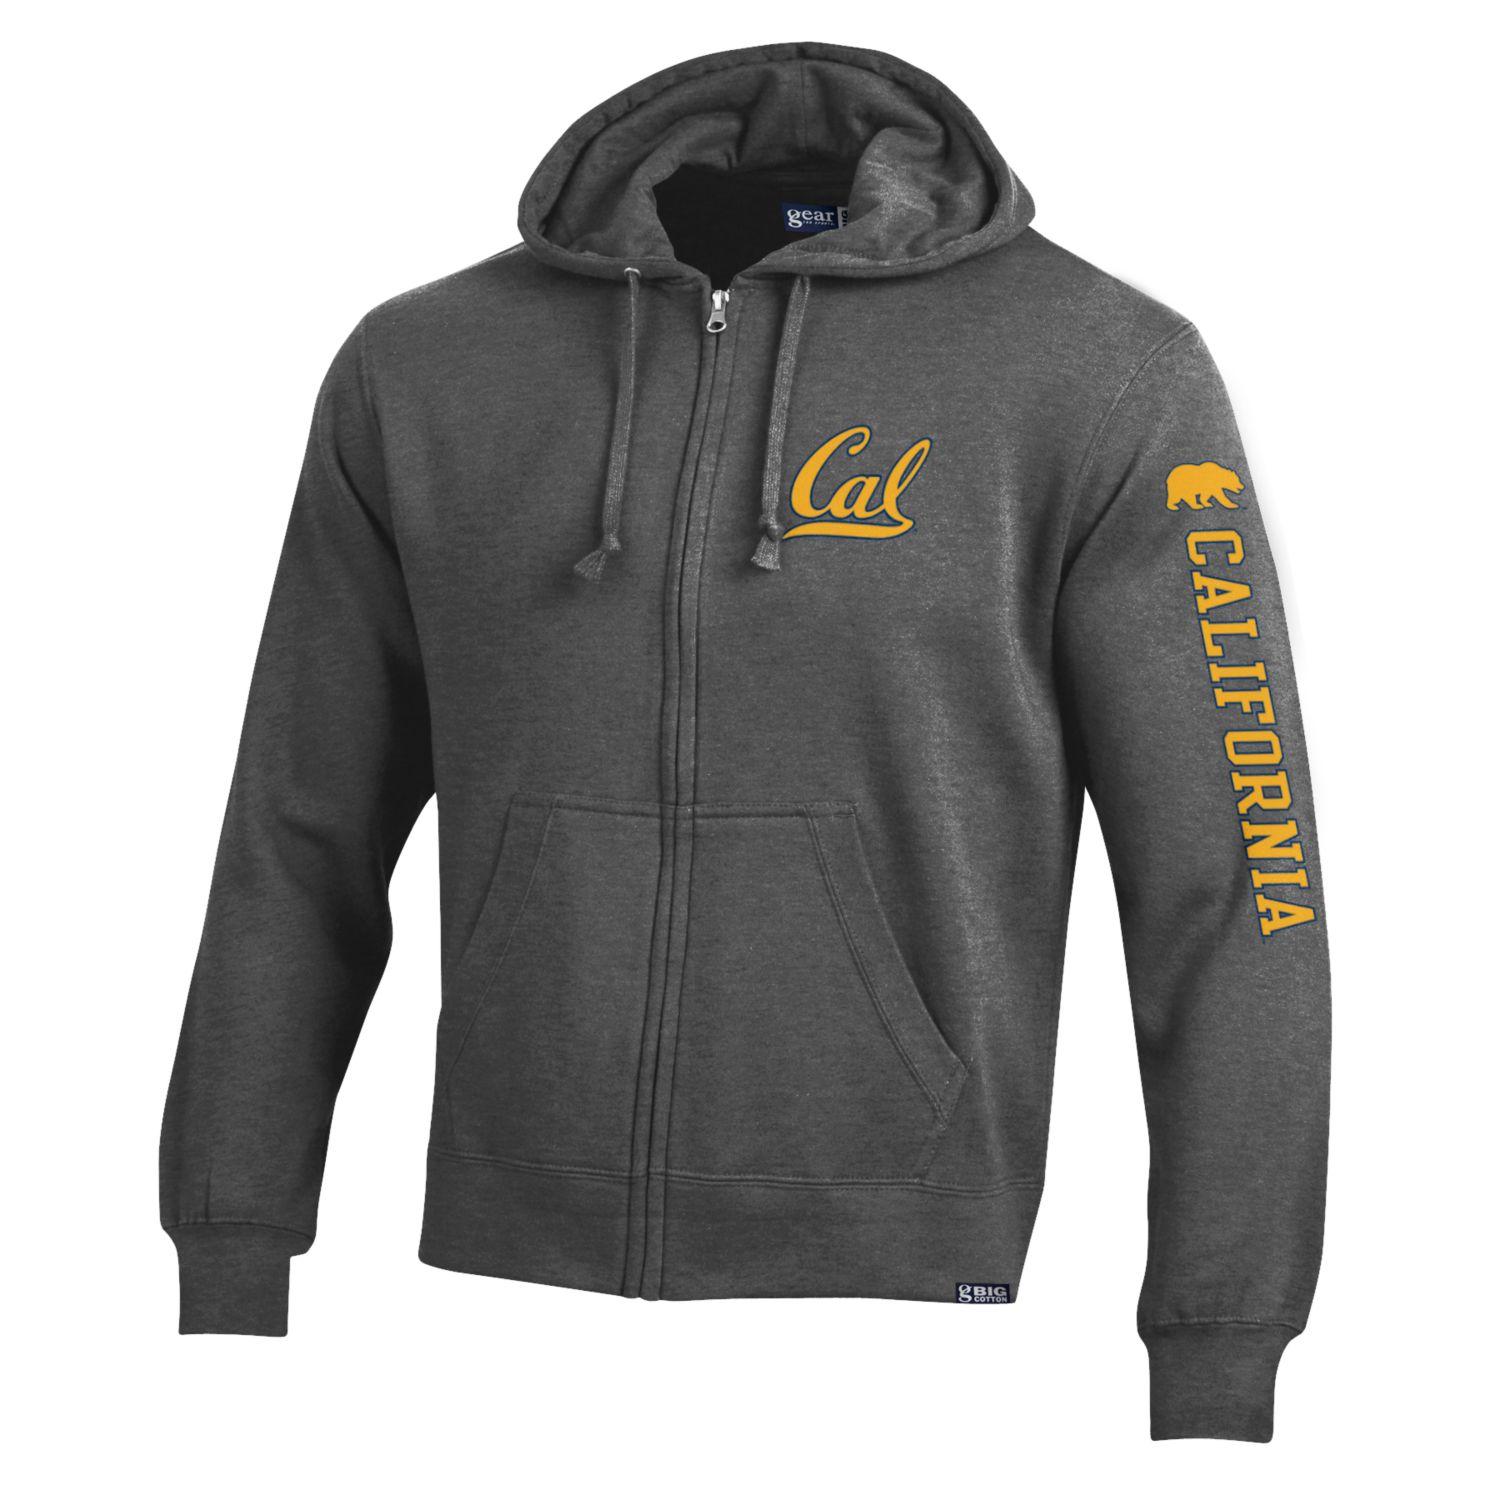 U.C. Berkeley Cal Big Cotton Zip-Up sweatshirt-Charcoal-Shop College Wear